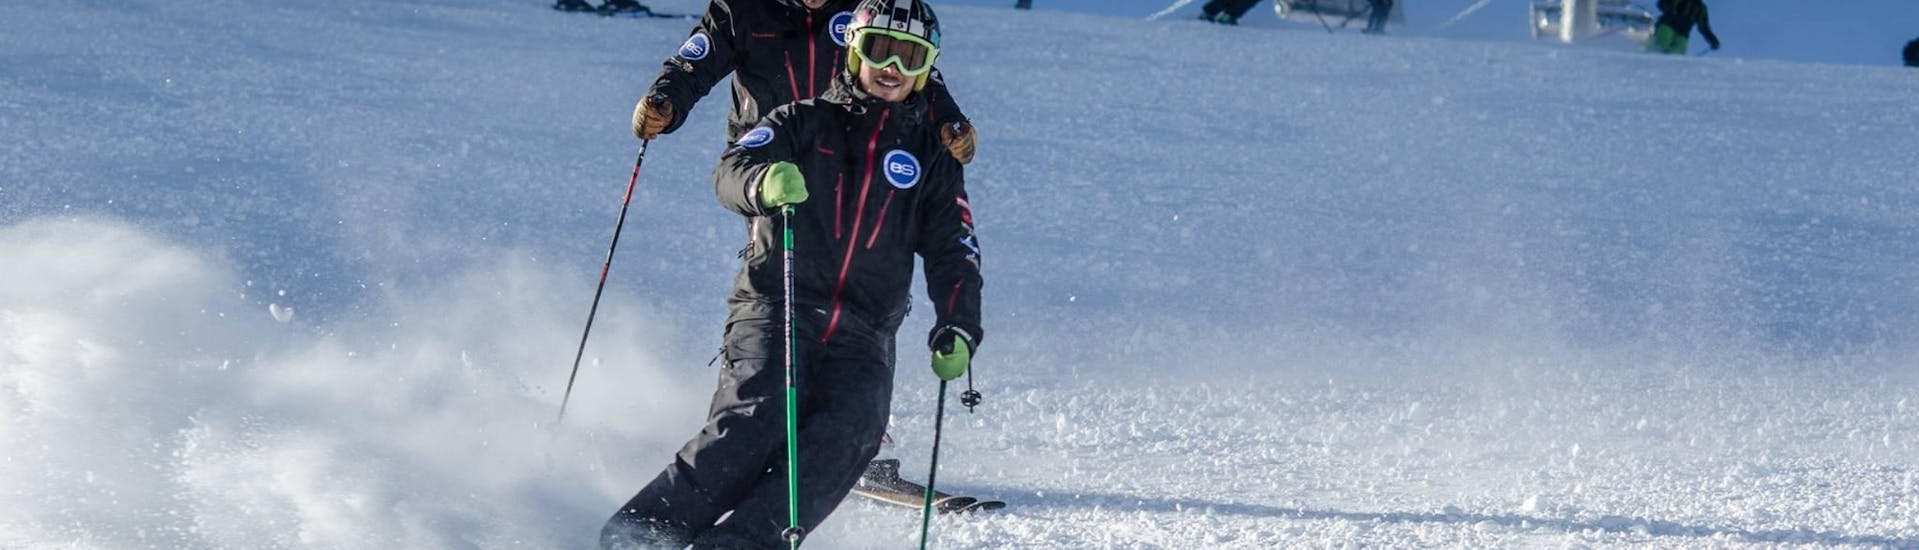 Cours de ski "Freeski" (11-17 ans) pour Skieurs expérimentés.